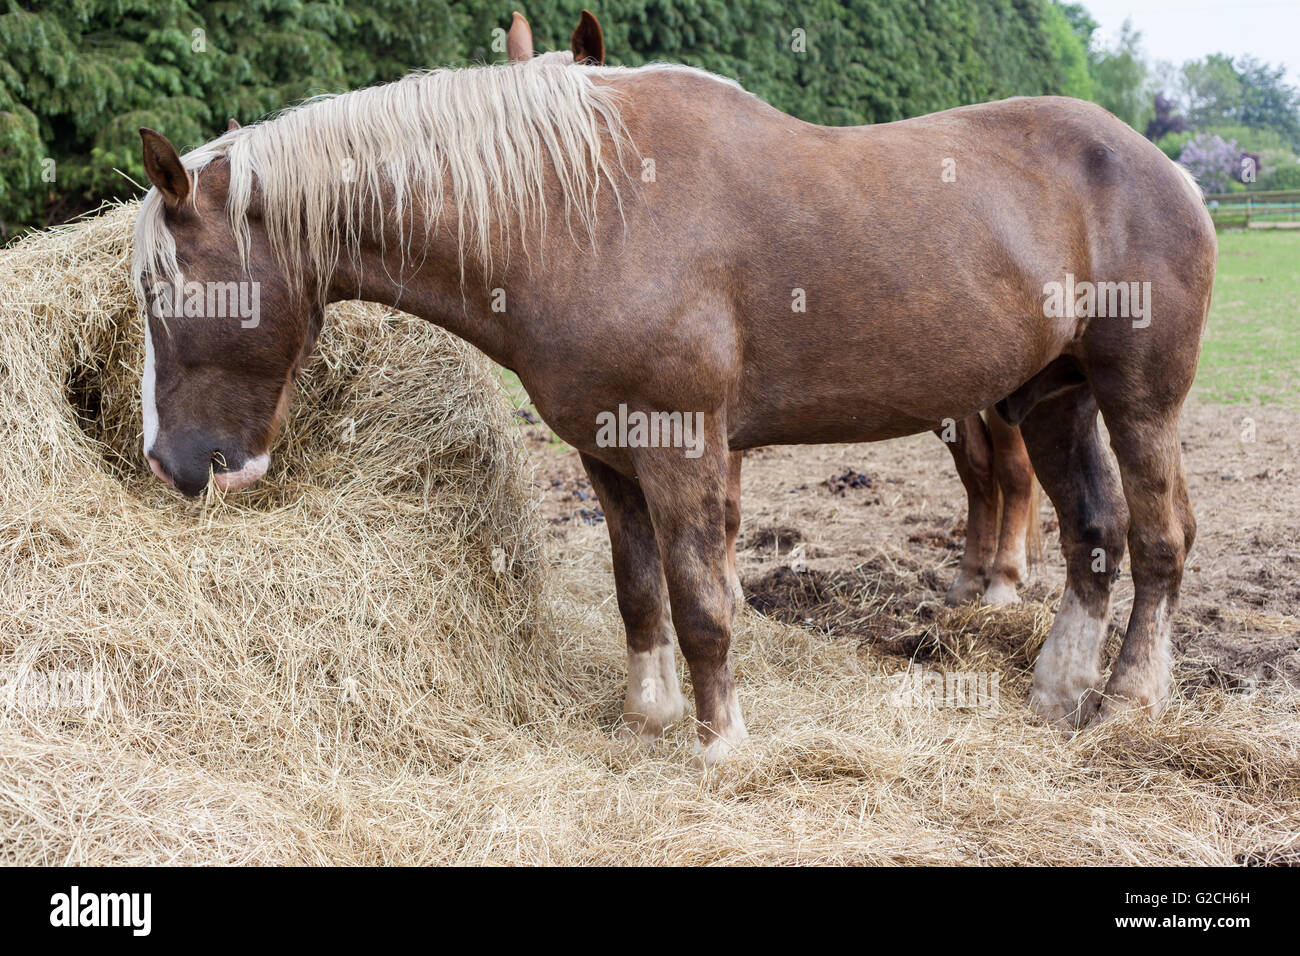 Horses eating hay. Stock Photo